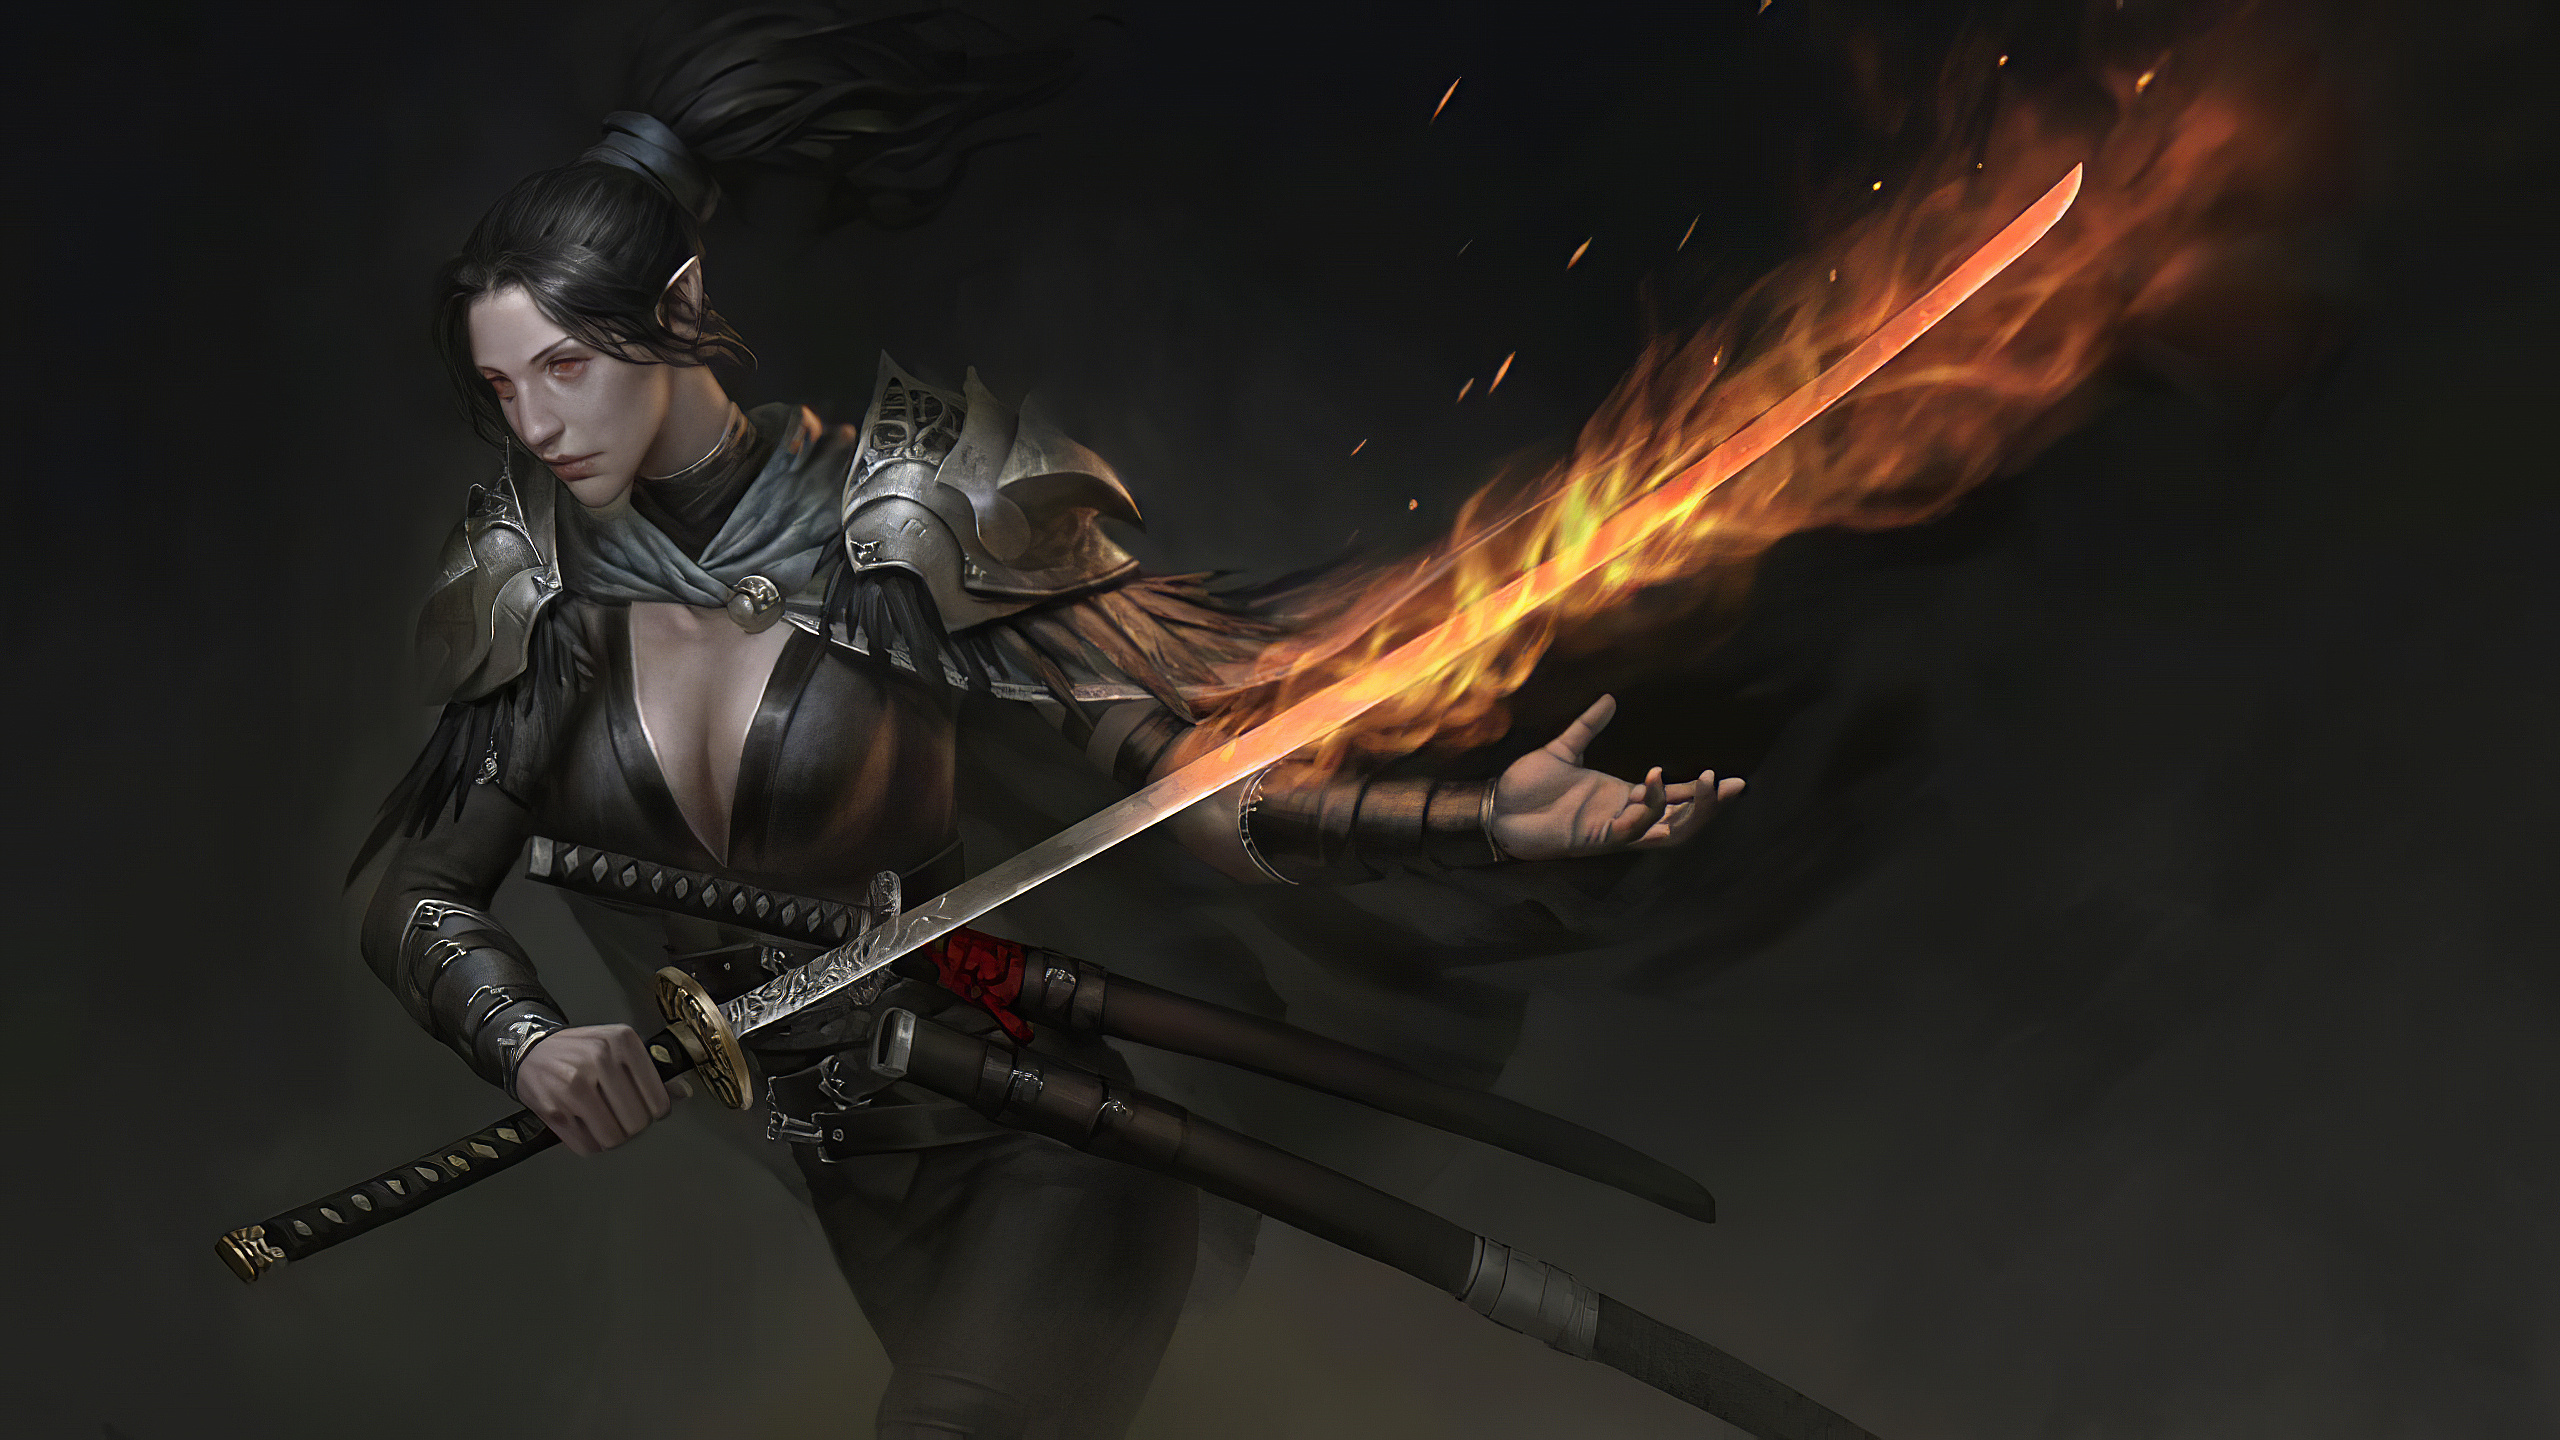 General 2560x1440 fantasy art sword katana samurai digital painting fantasy girl